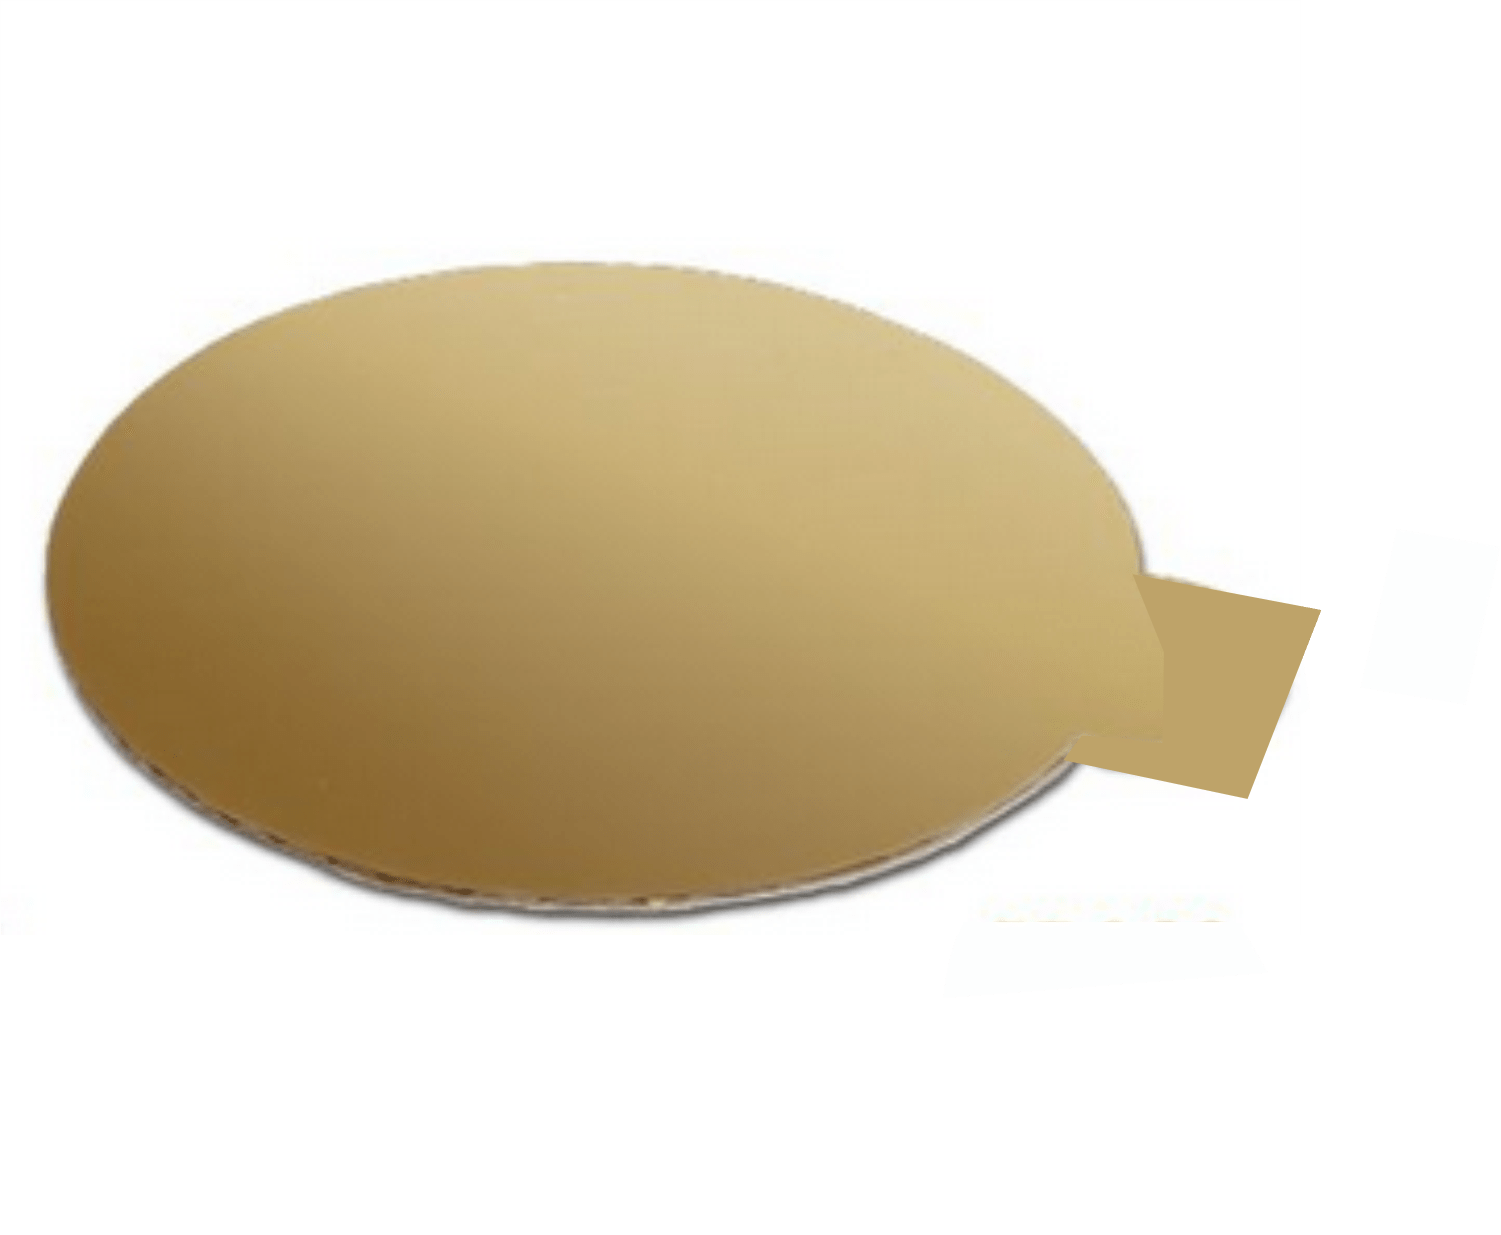 Porta Docinho Dourado 10 cm - 10 UN  Ecopack/Sulformas